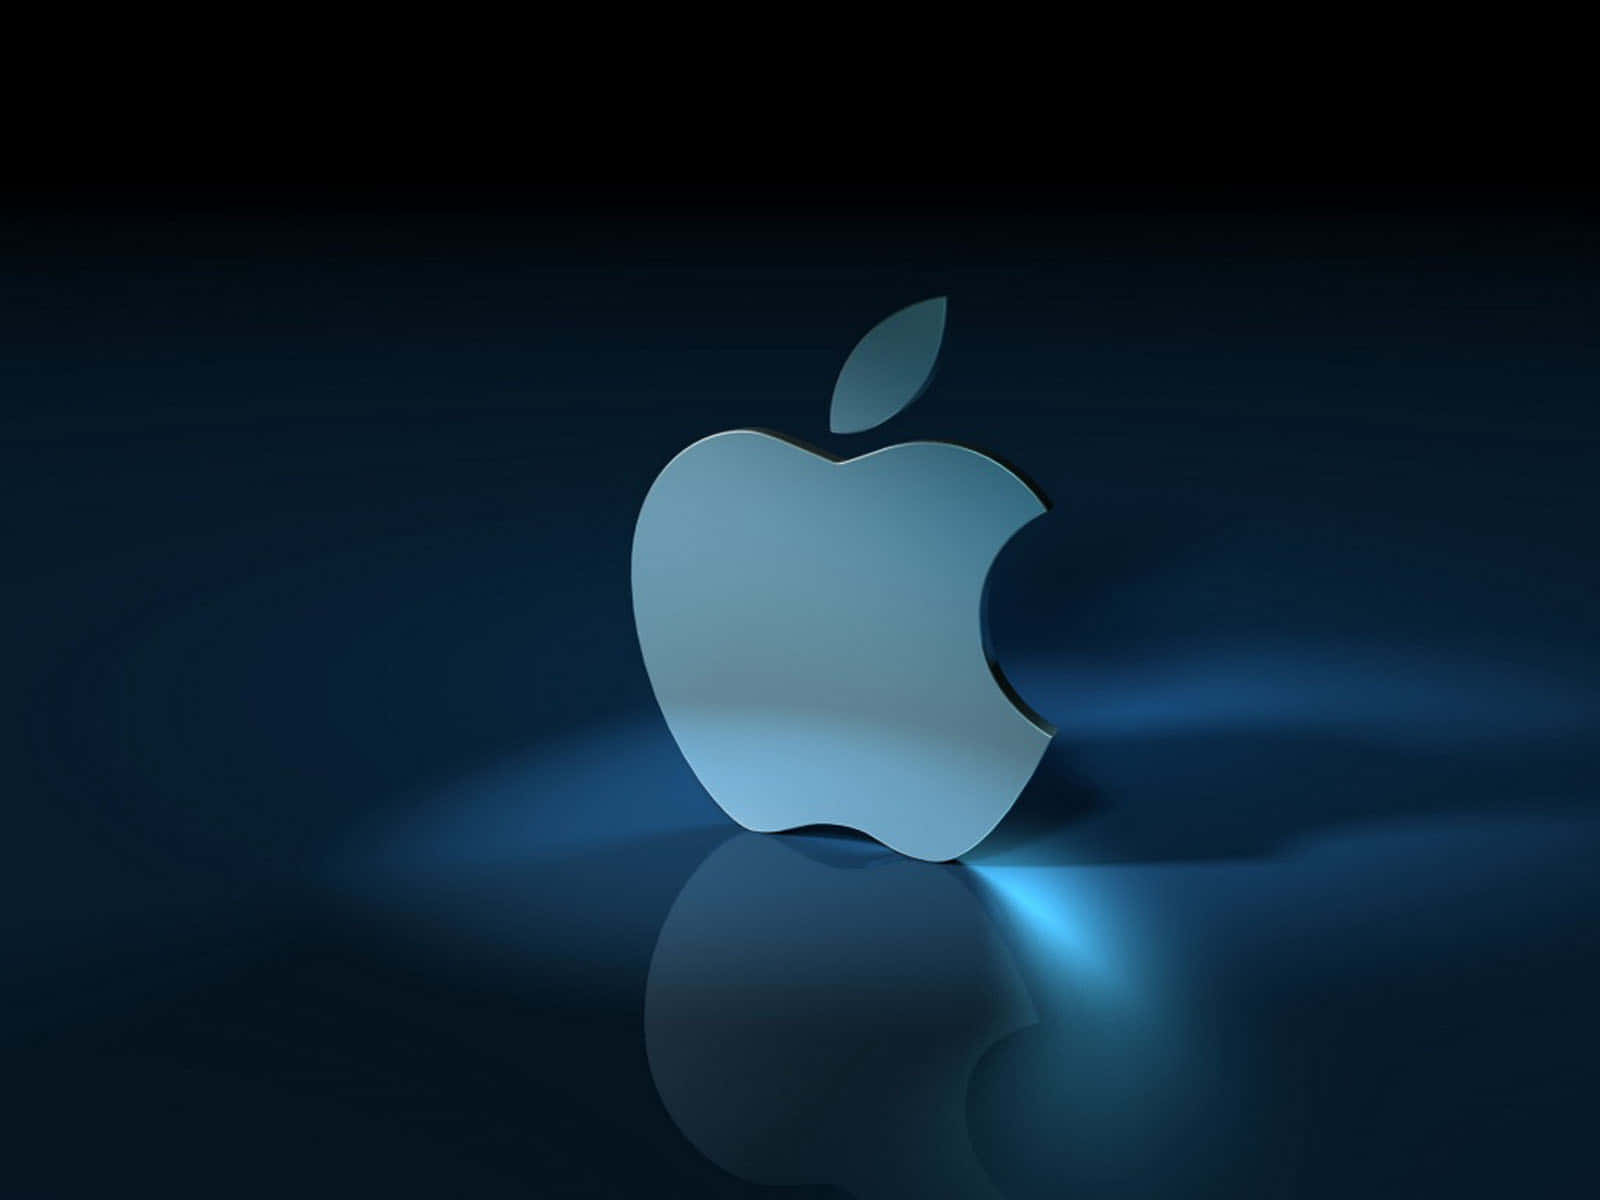 Apple Logo On A Dark Background